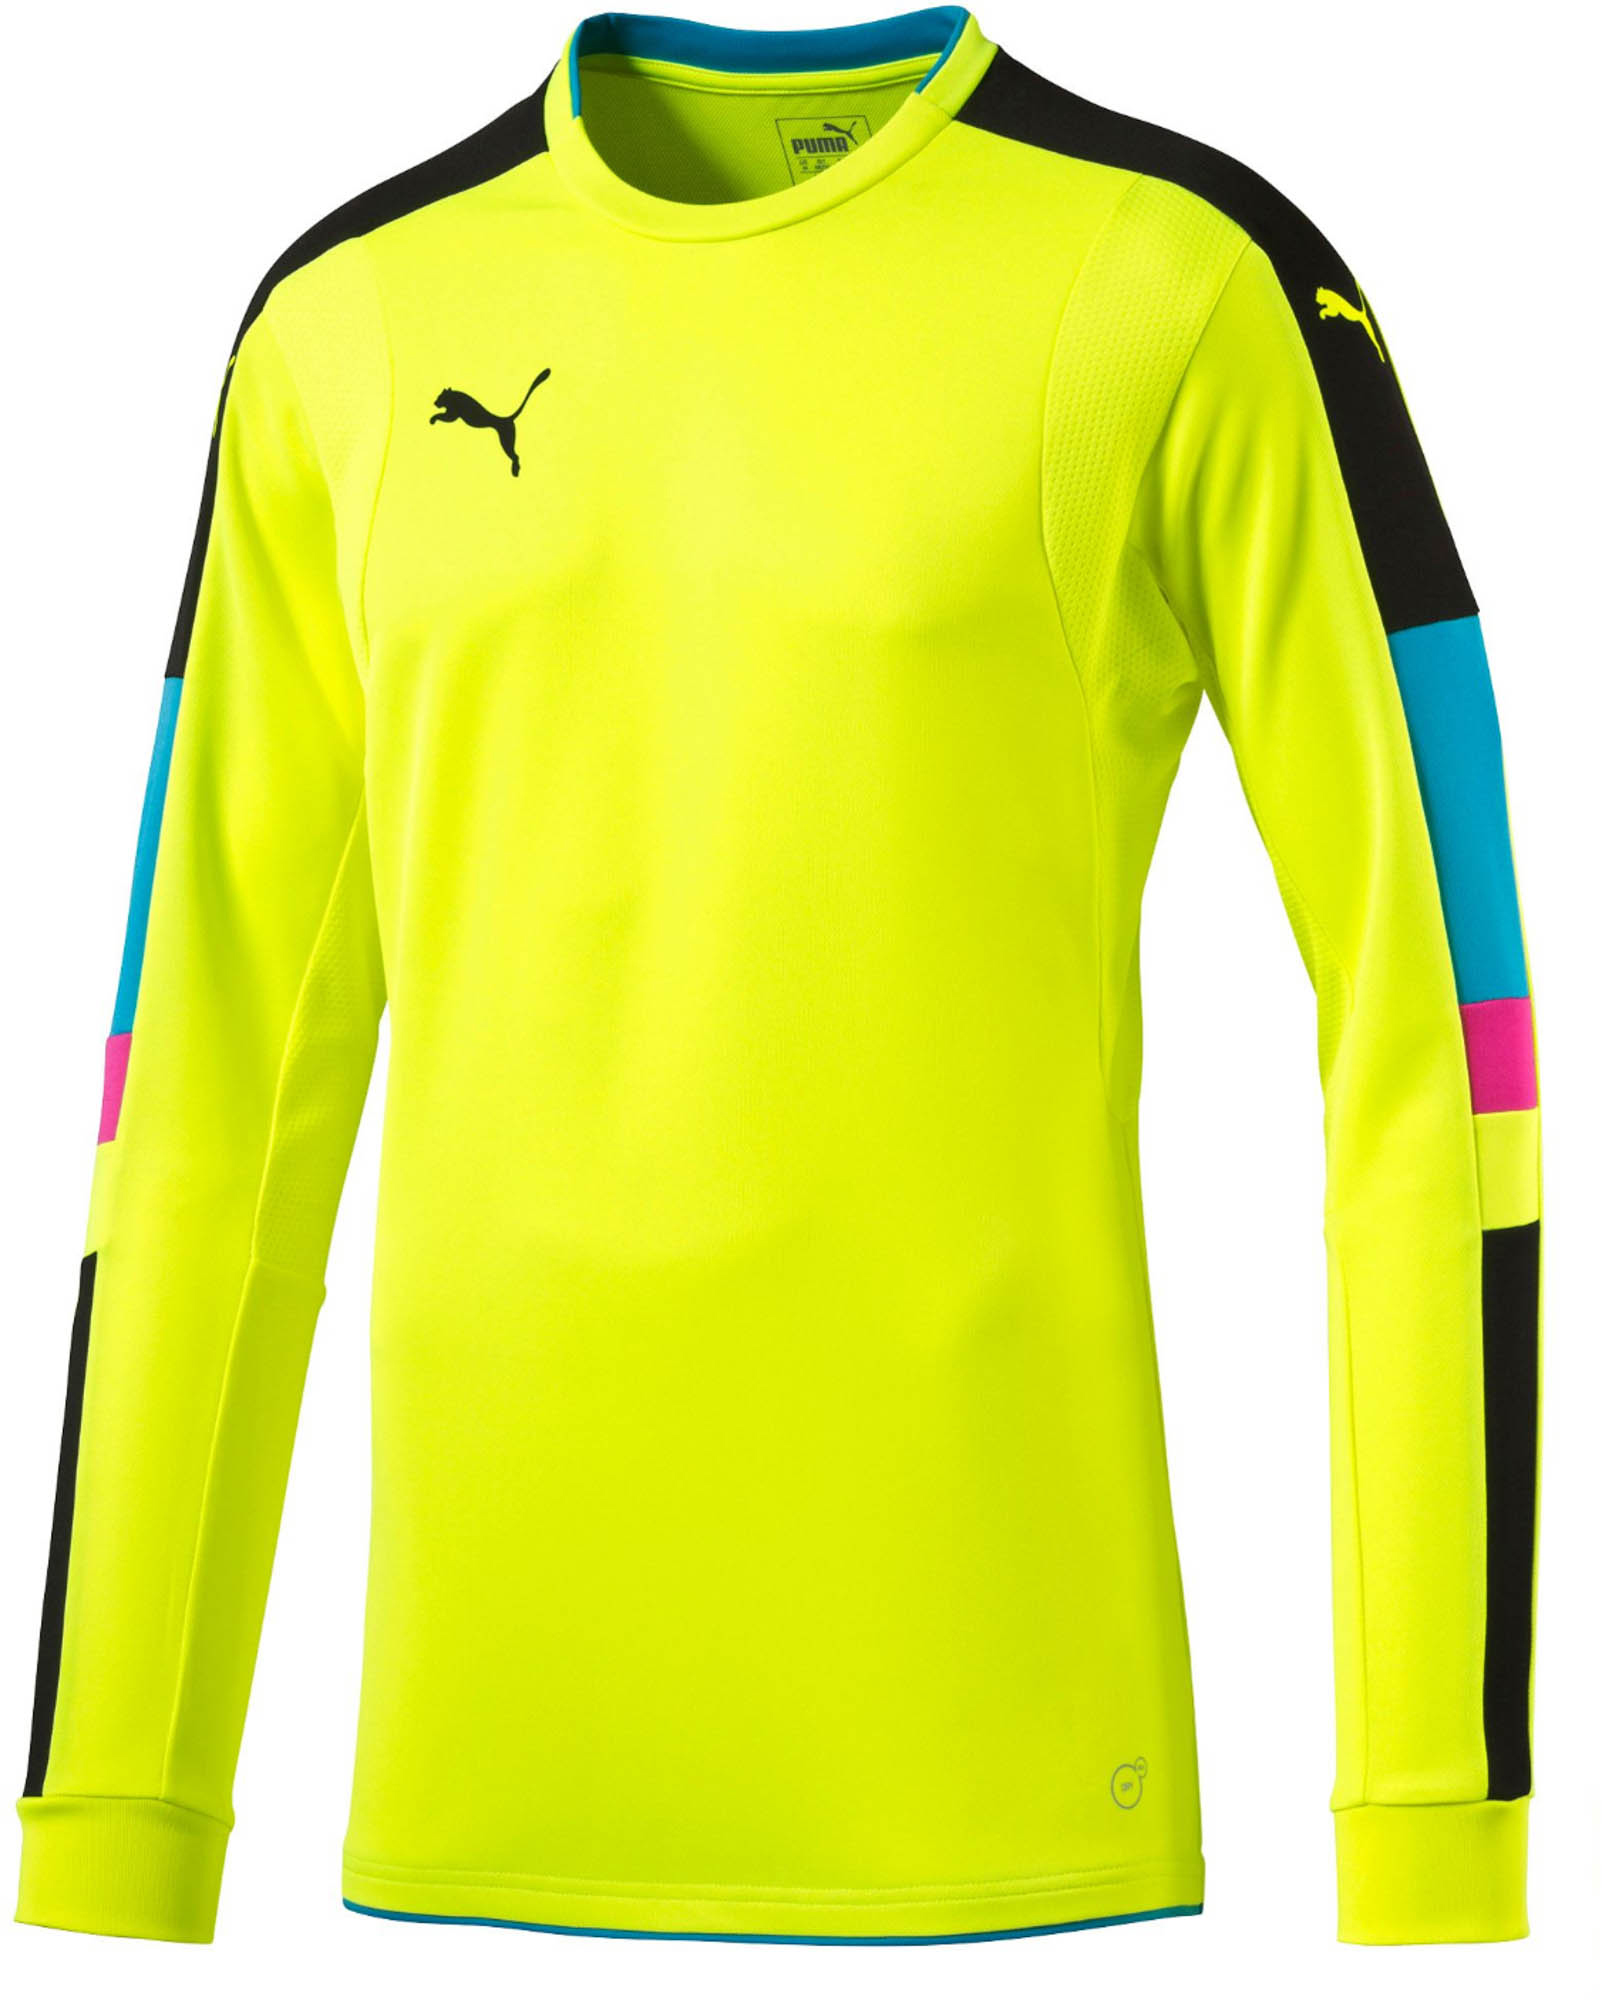 puma goalkeeper jersey 2018